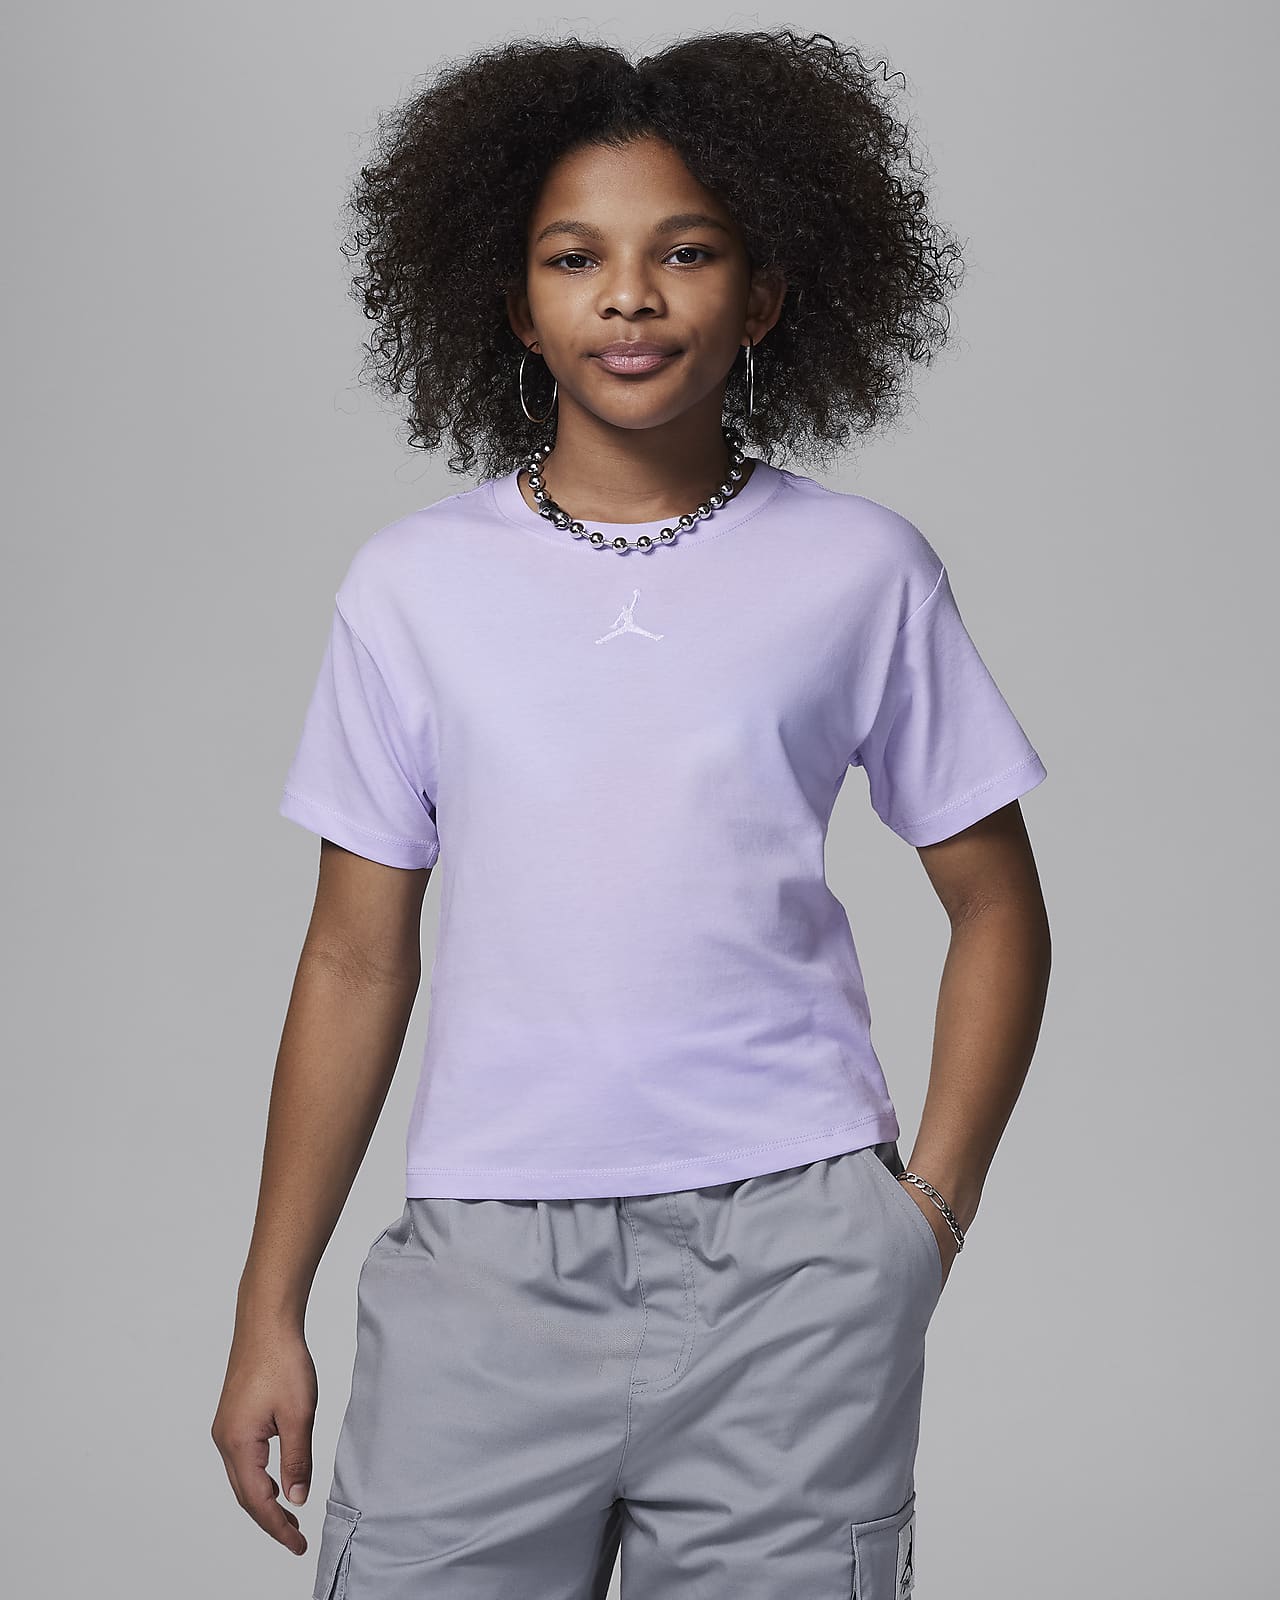 Jordan T-Shirt für ältere Kinder (Mädchen)